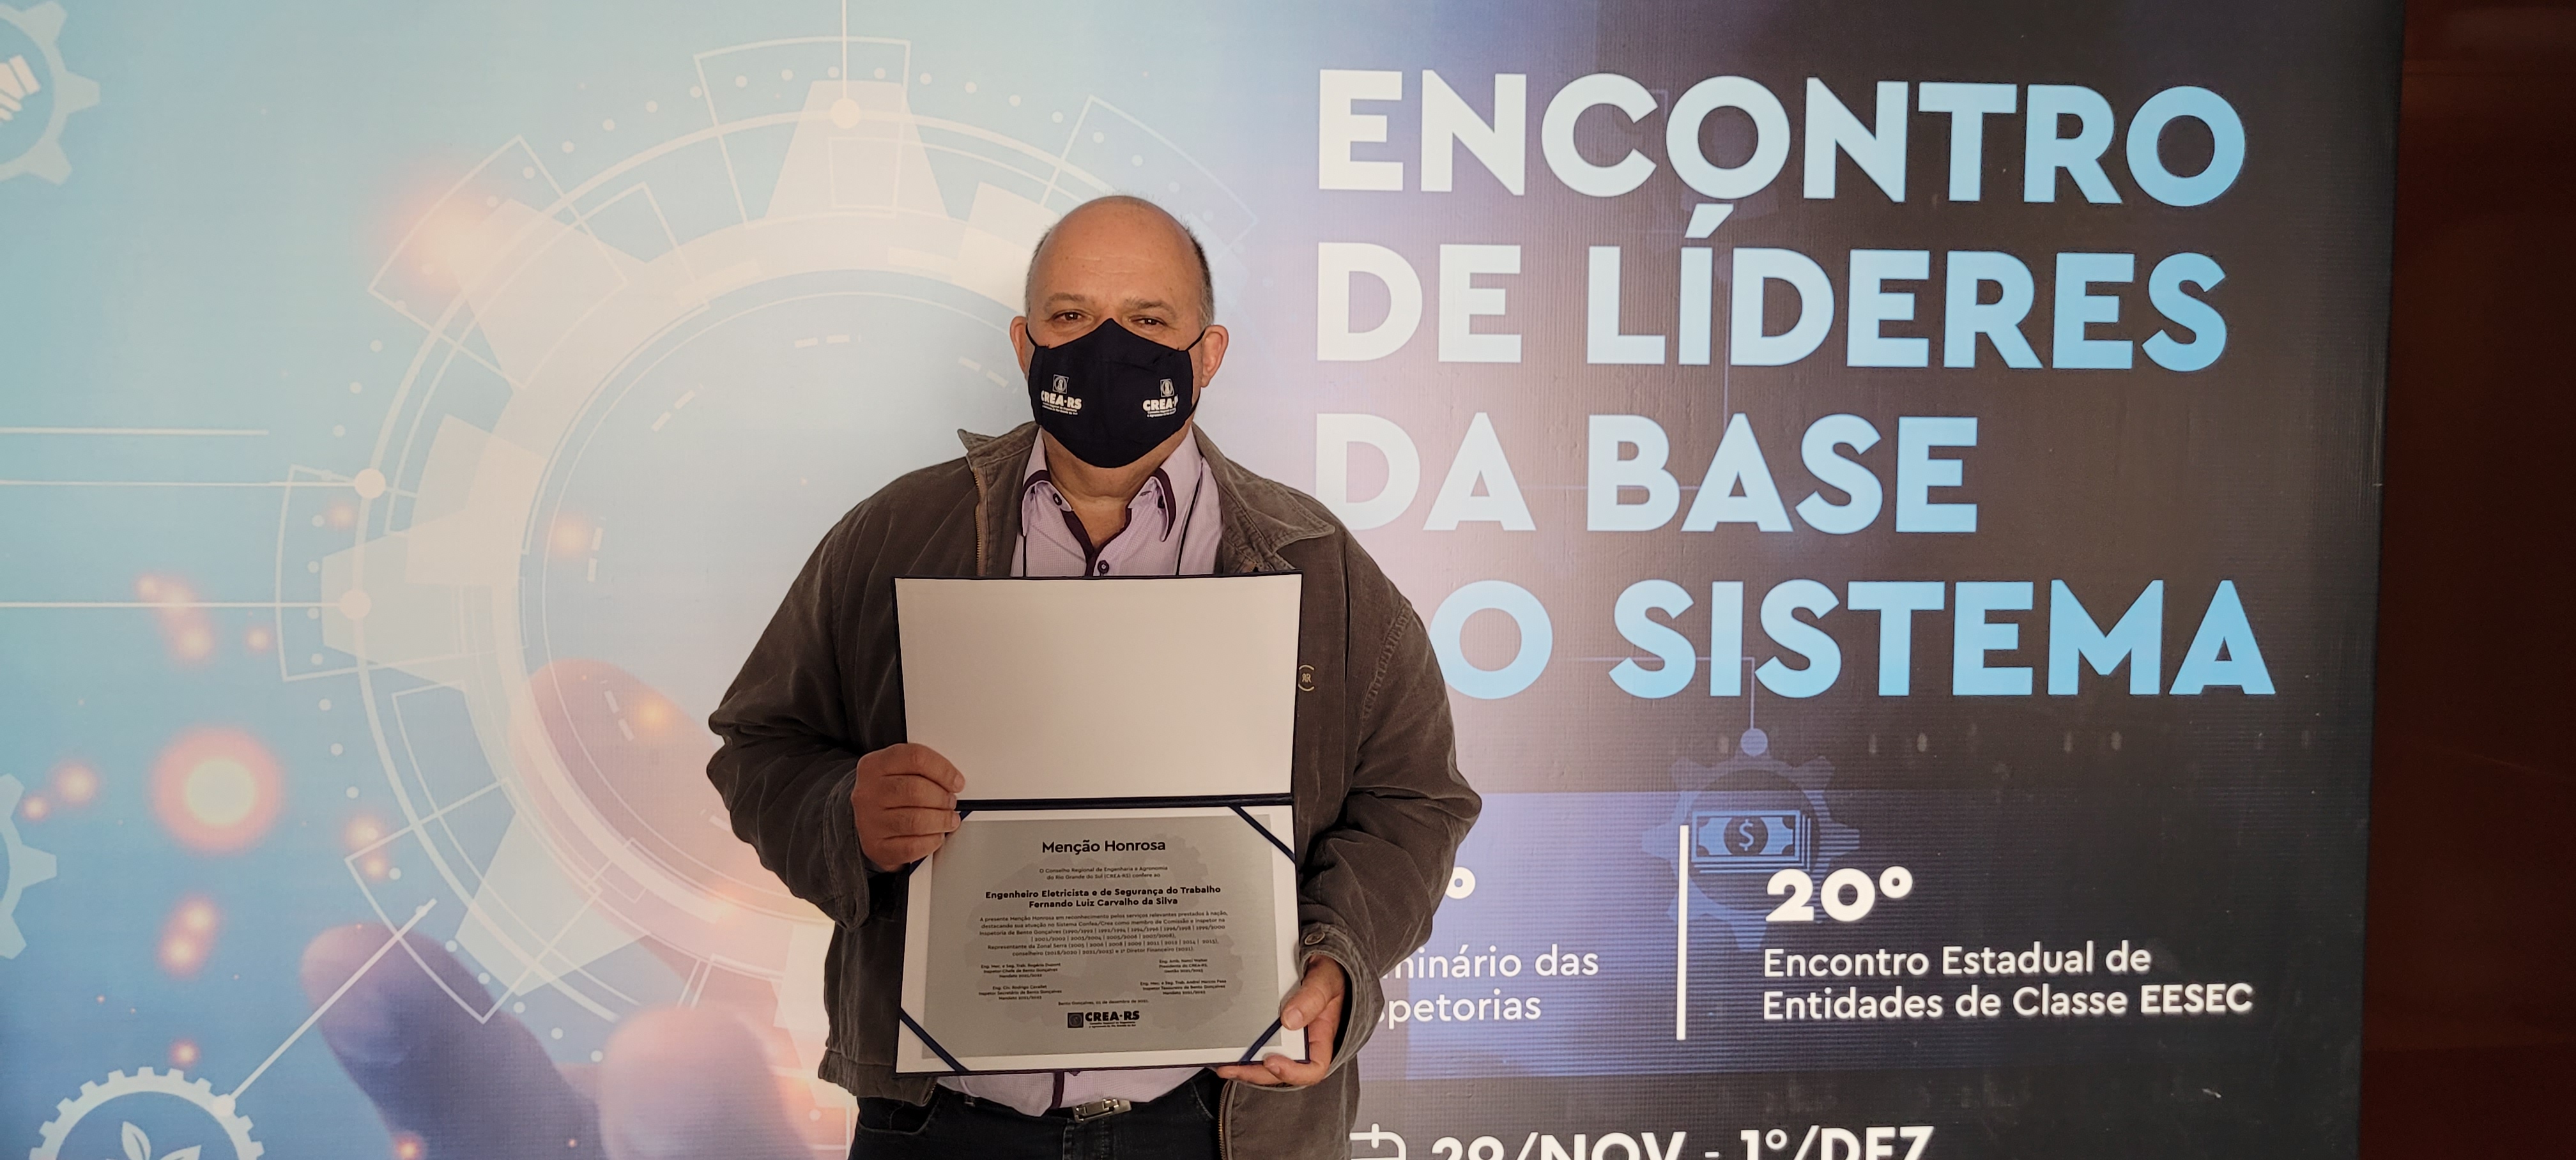 Eng. eletr. Fernando Luiz Carvalho da Silva e sua placa